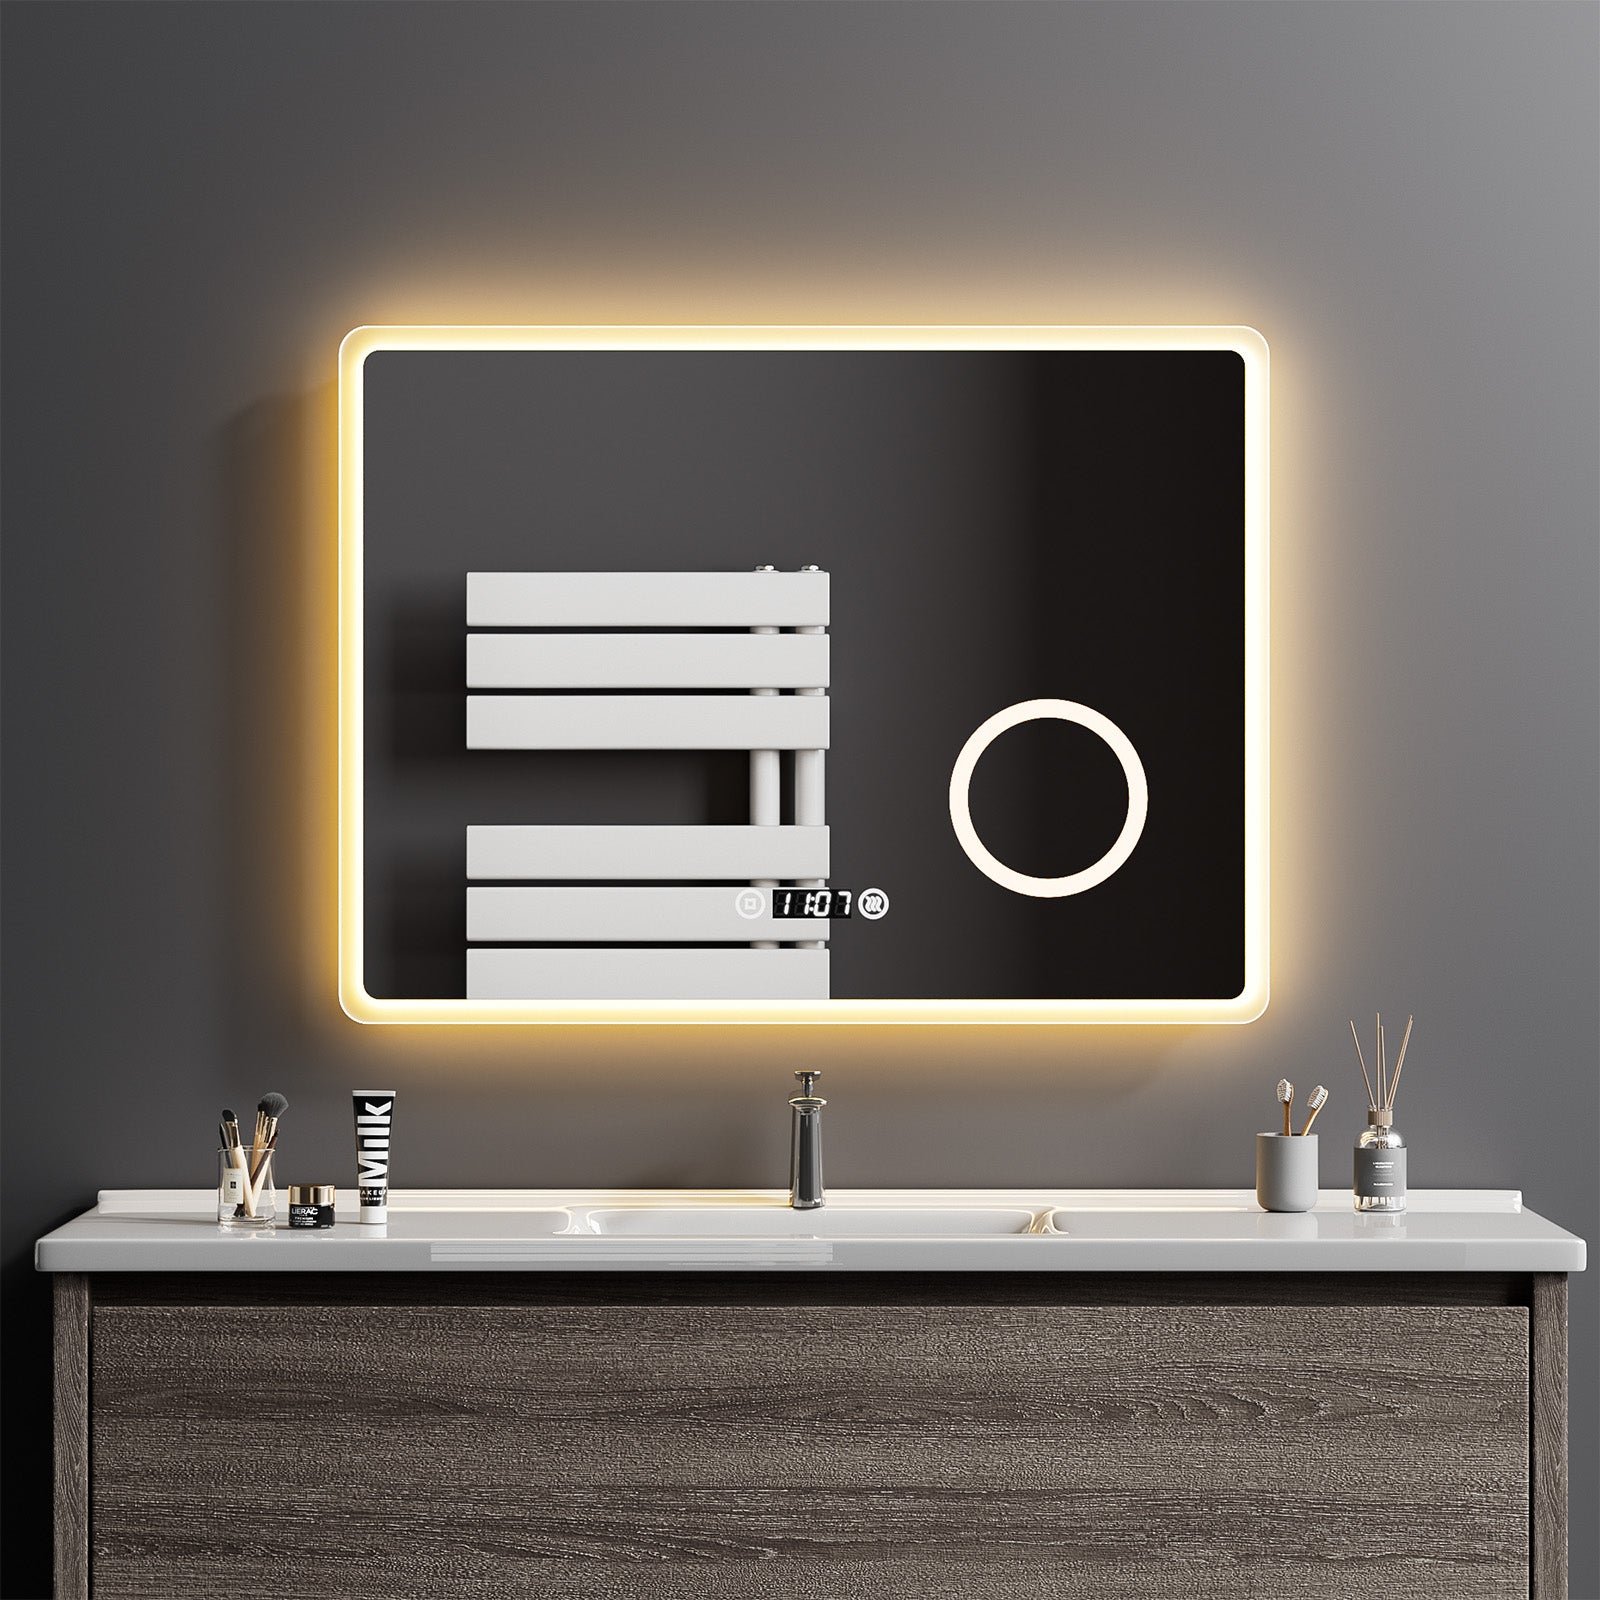 EMKE „LeeMi πX Plus“ Wandspiegel mit Beleuchtung 80 x 60 cm mit Schminkspiegel, Touch-Schalter, Antibeschlag, 3 Farben, Uhr, Dimmung